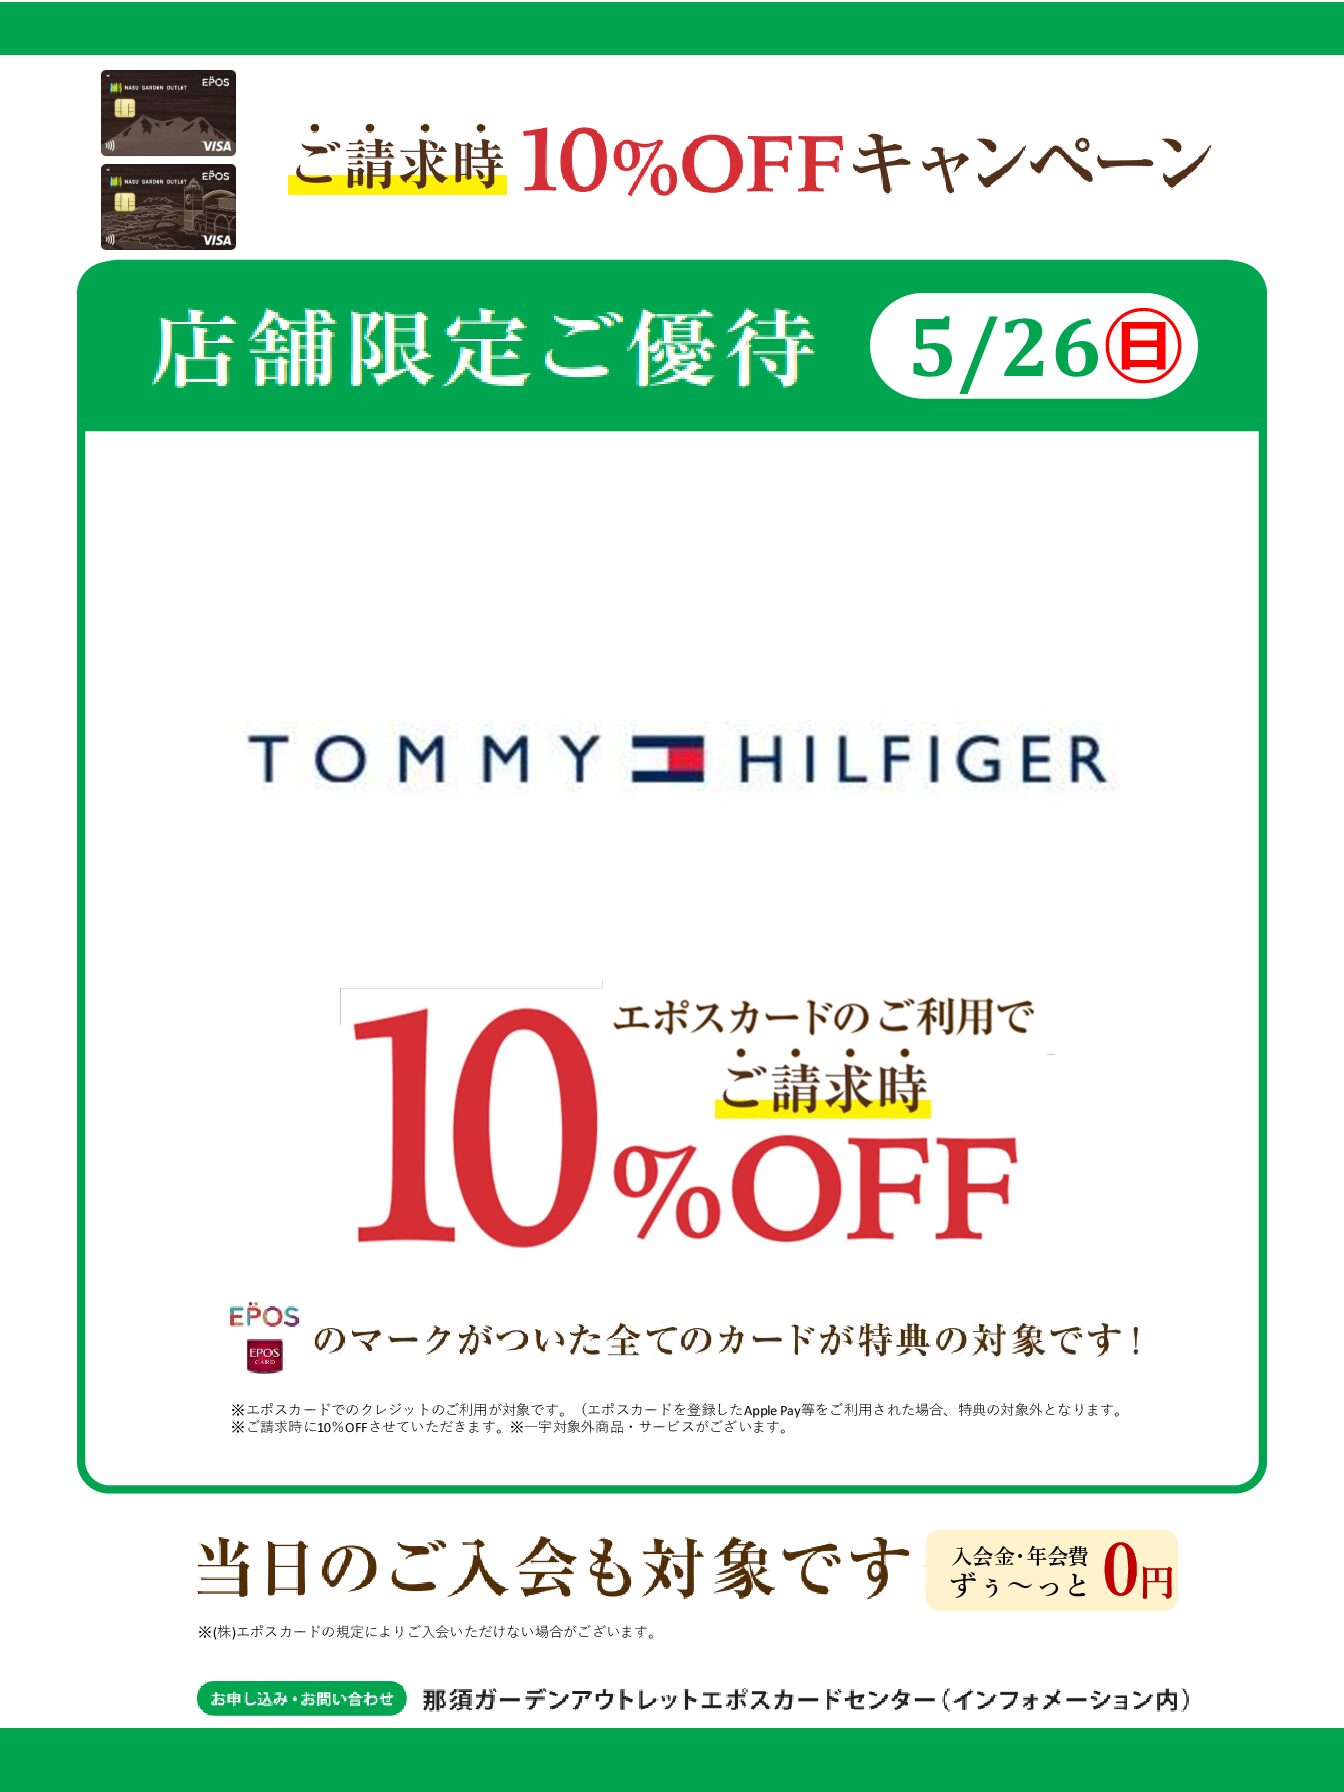 トミー ヒルフィガー 那須店限定 エポスカードご請求時10%OFF キャンペーン